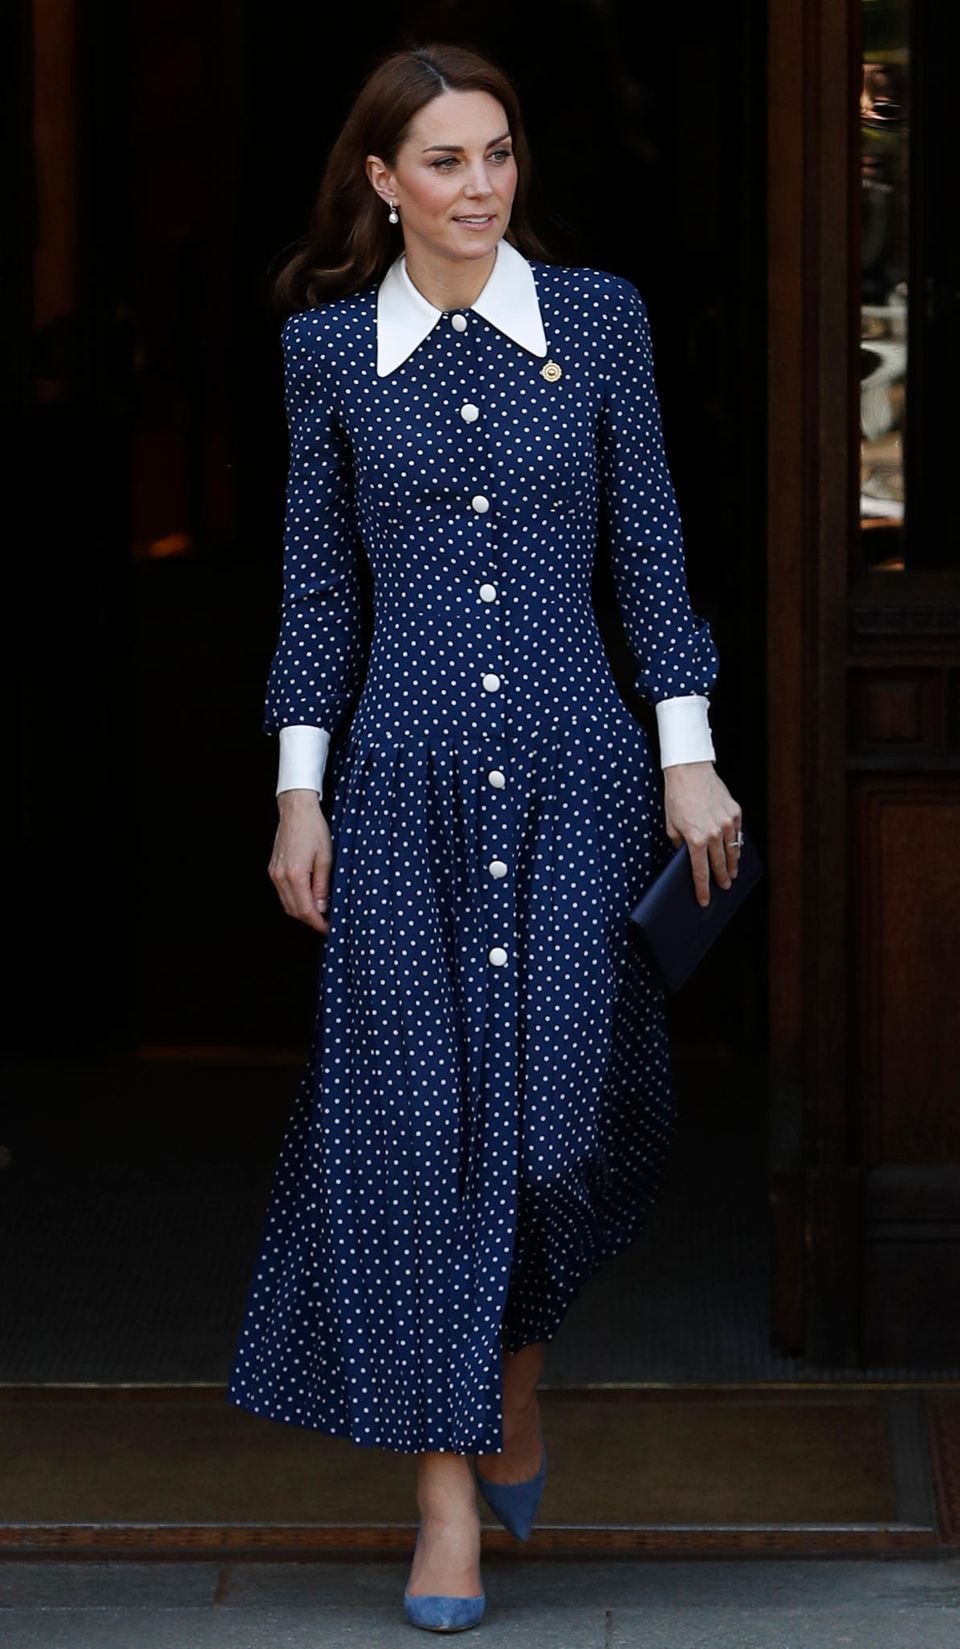 Gleiche Outfits der Royals: Herzogin Kate im Pünktchenkleid